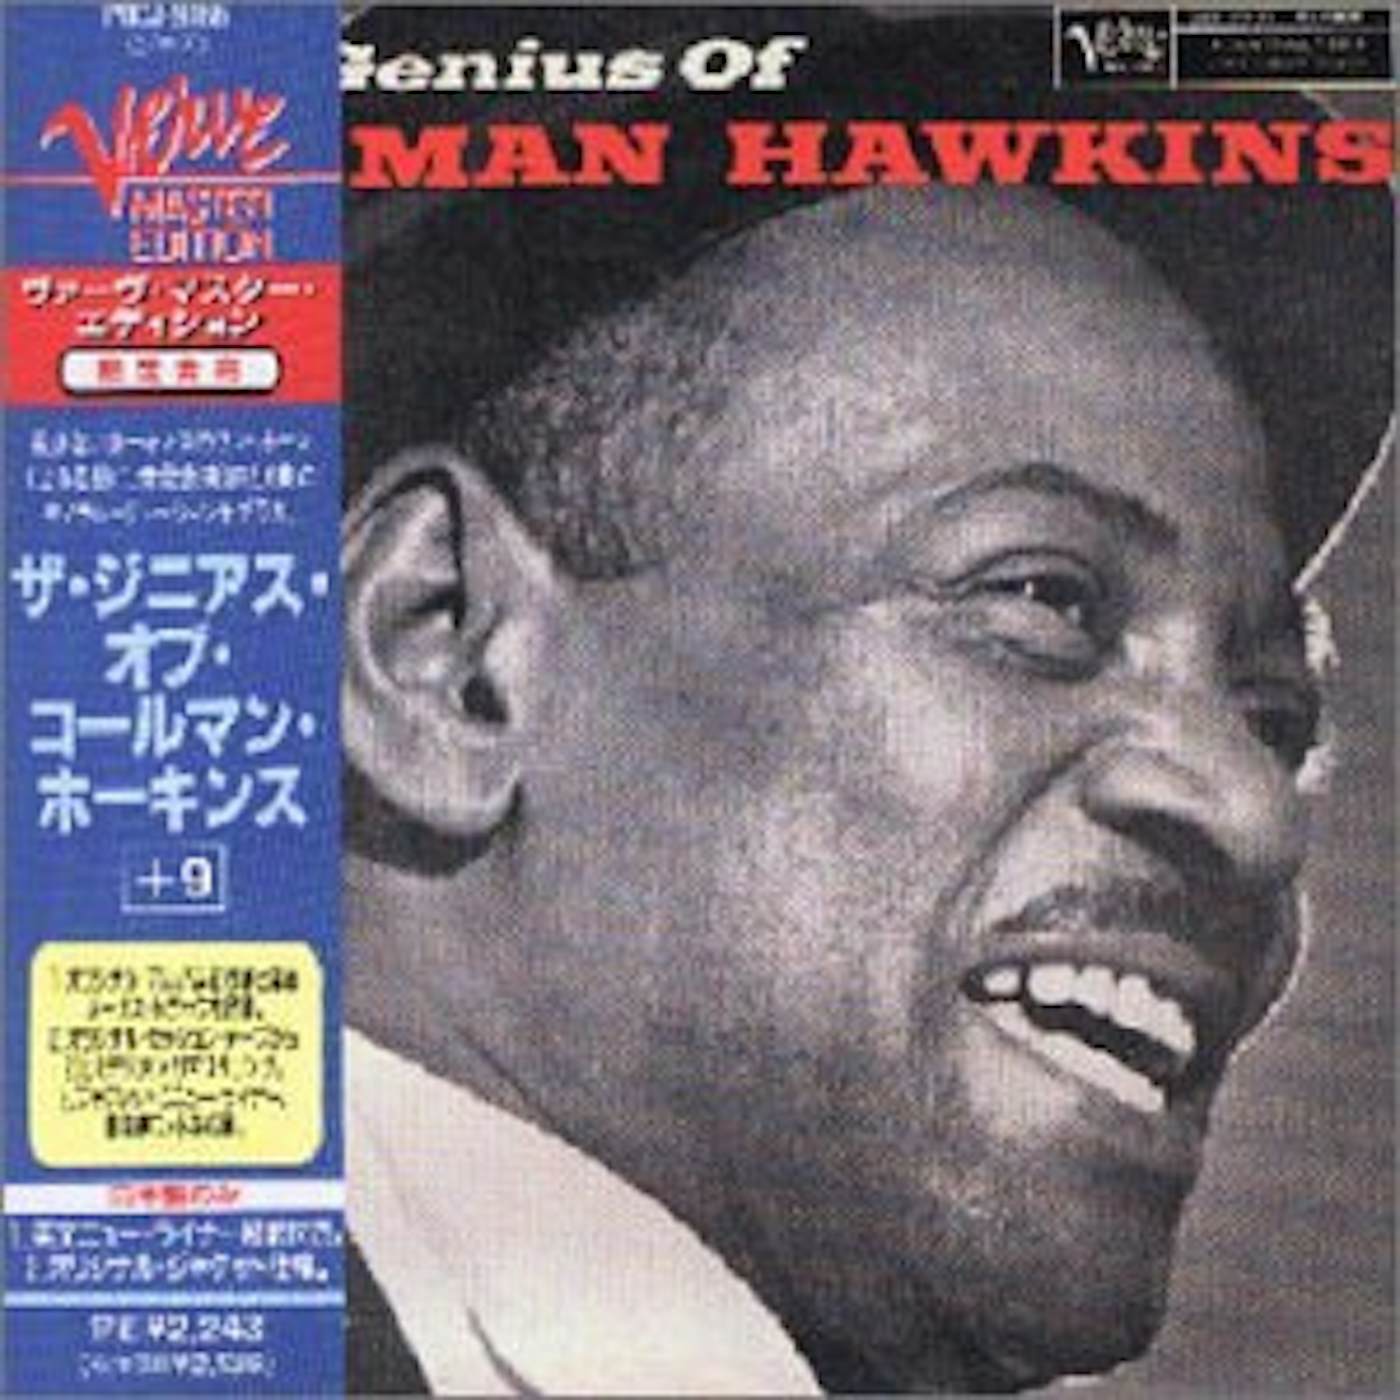 Coleman Hawkins GENIUS OF CD